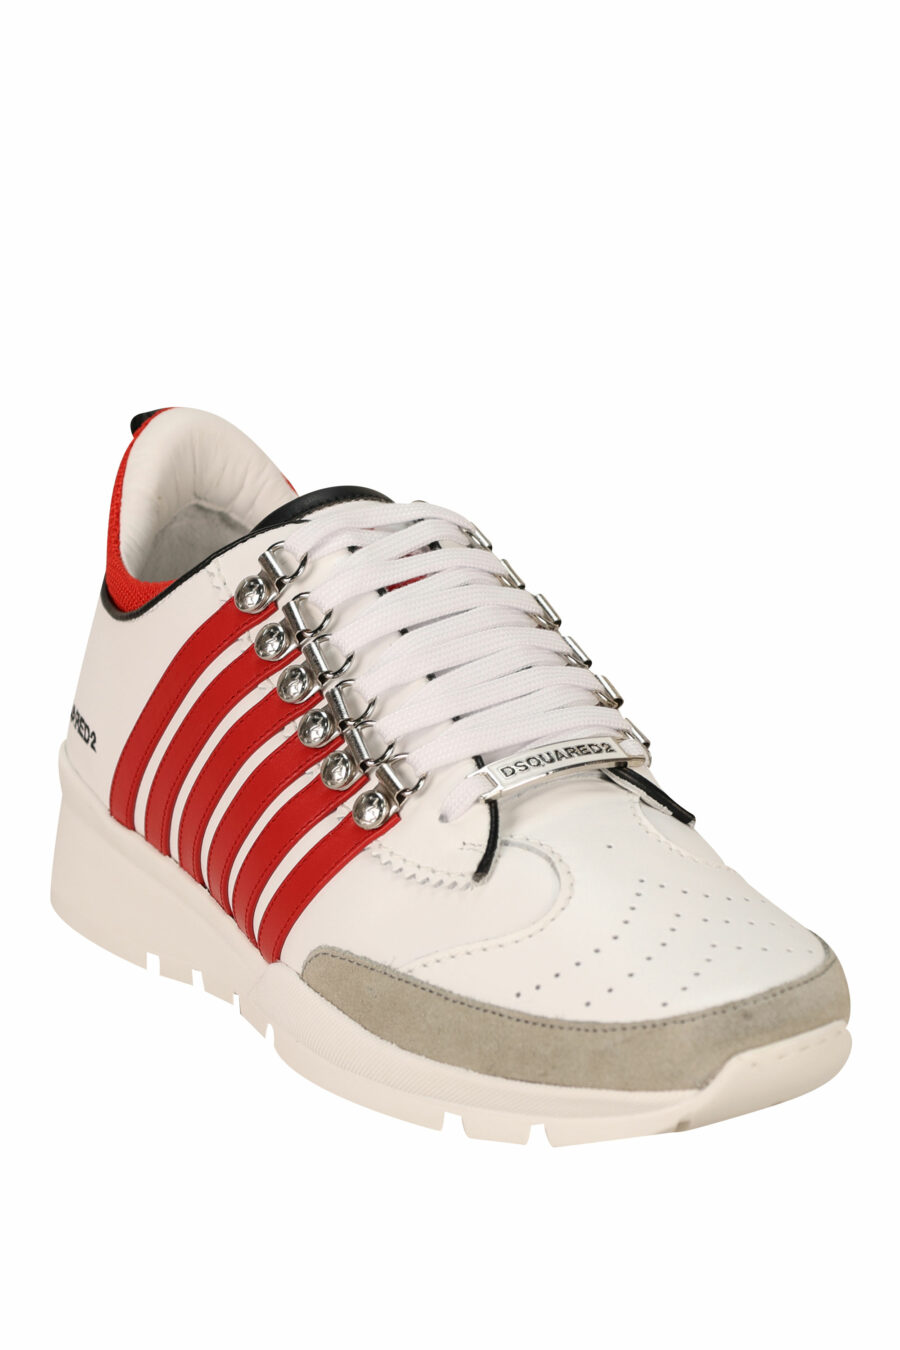 Zapatillas blancas con lineas rojas y suela blanca - 8055777300985 1